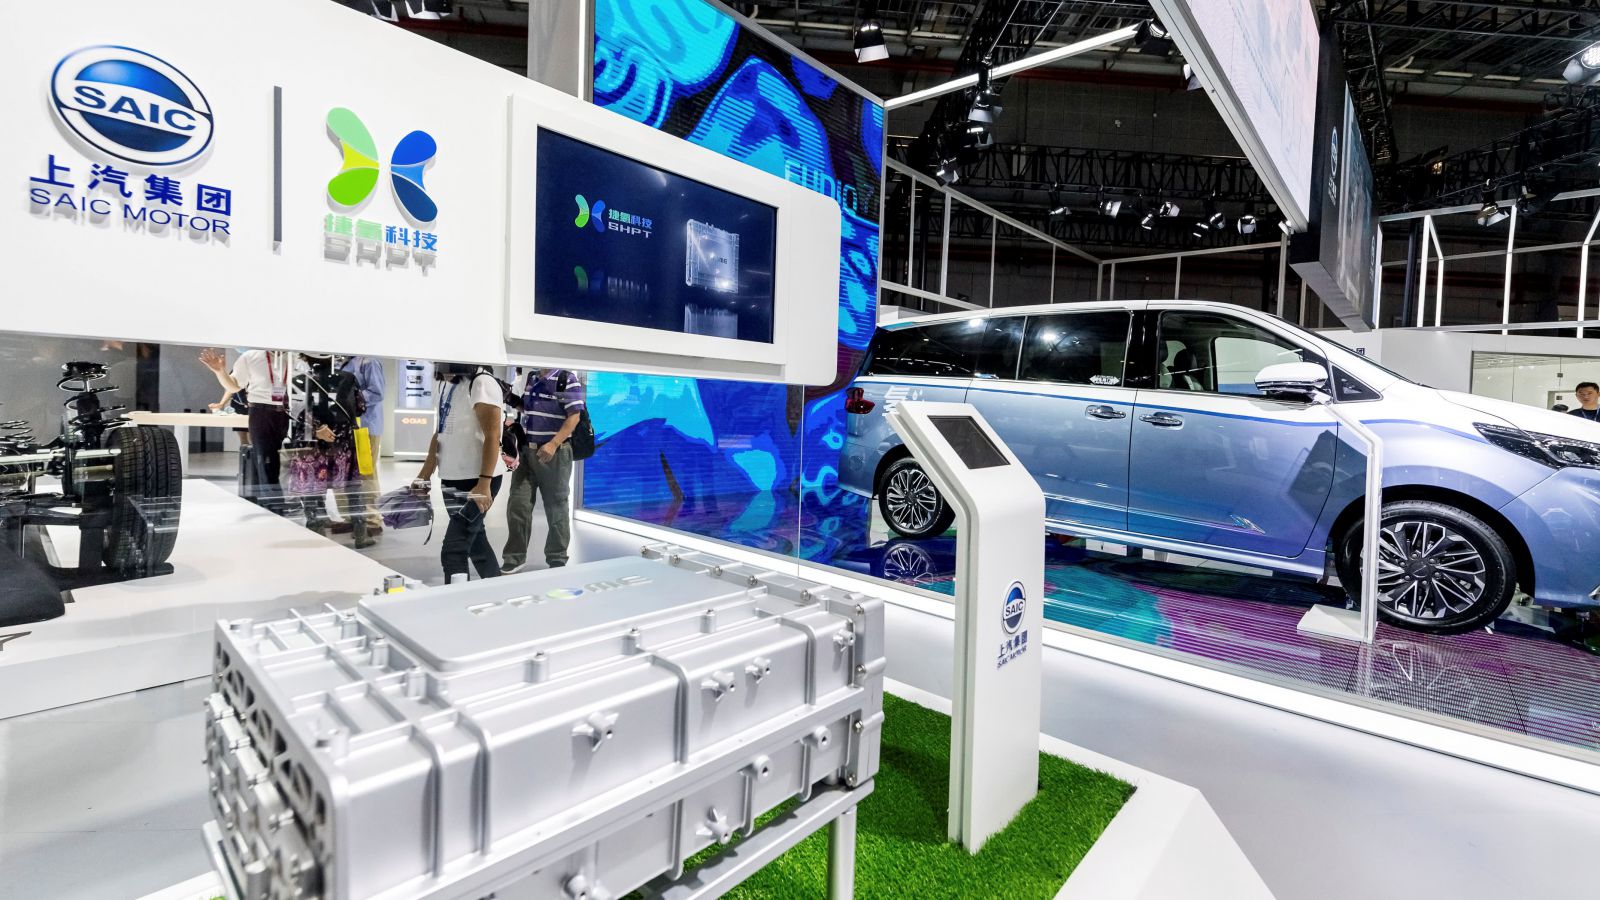 Nhà sản xuất ô tô nhà nước SAIC Motor liên kết cung Alibaba thành lập một chi nhánh xe điện mới có tên Zhiji Auto.